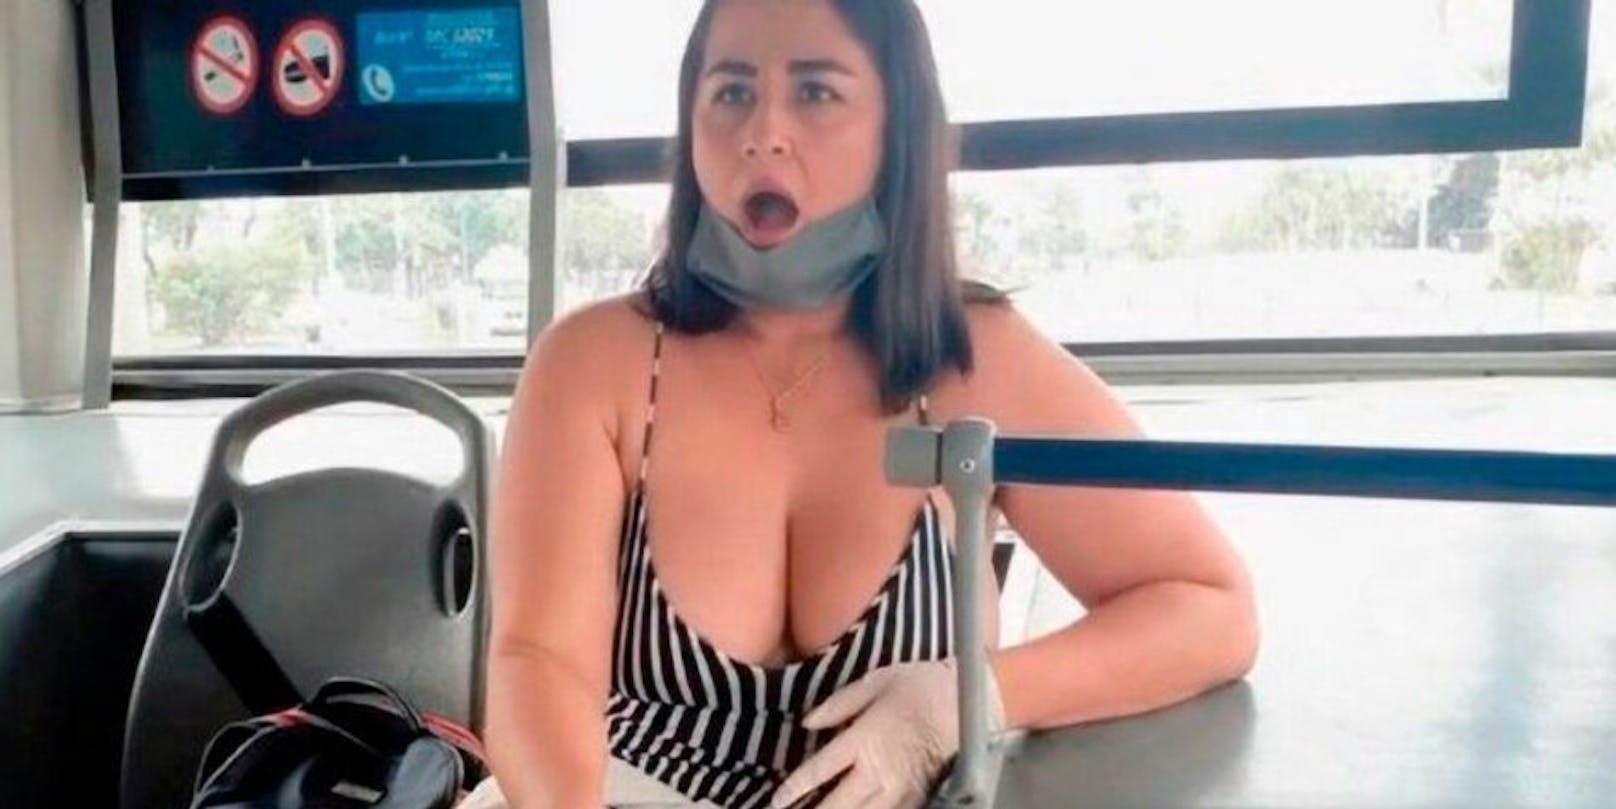 Porno-Starlet Kaori Dominick trägt beim Porno-Dreh im Bus keinen Corona-Mundschutz: Skandal!